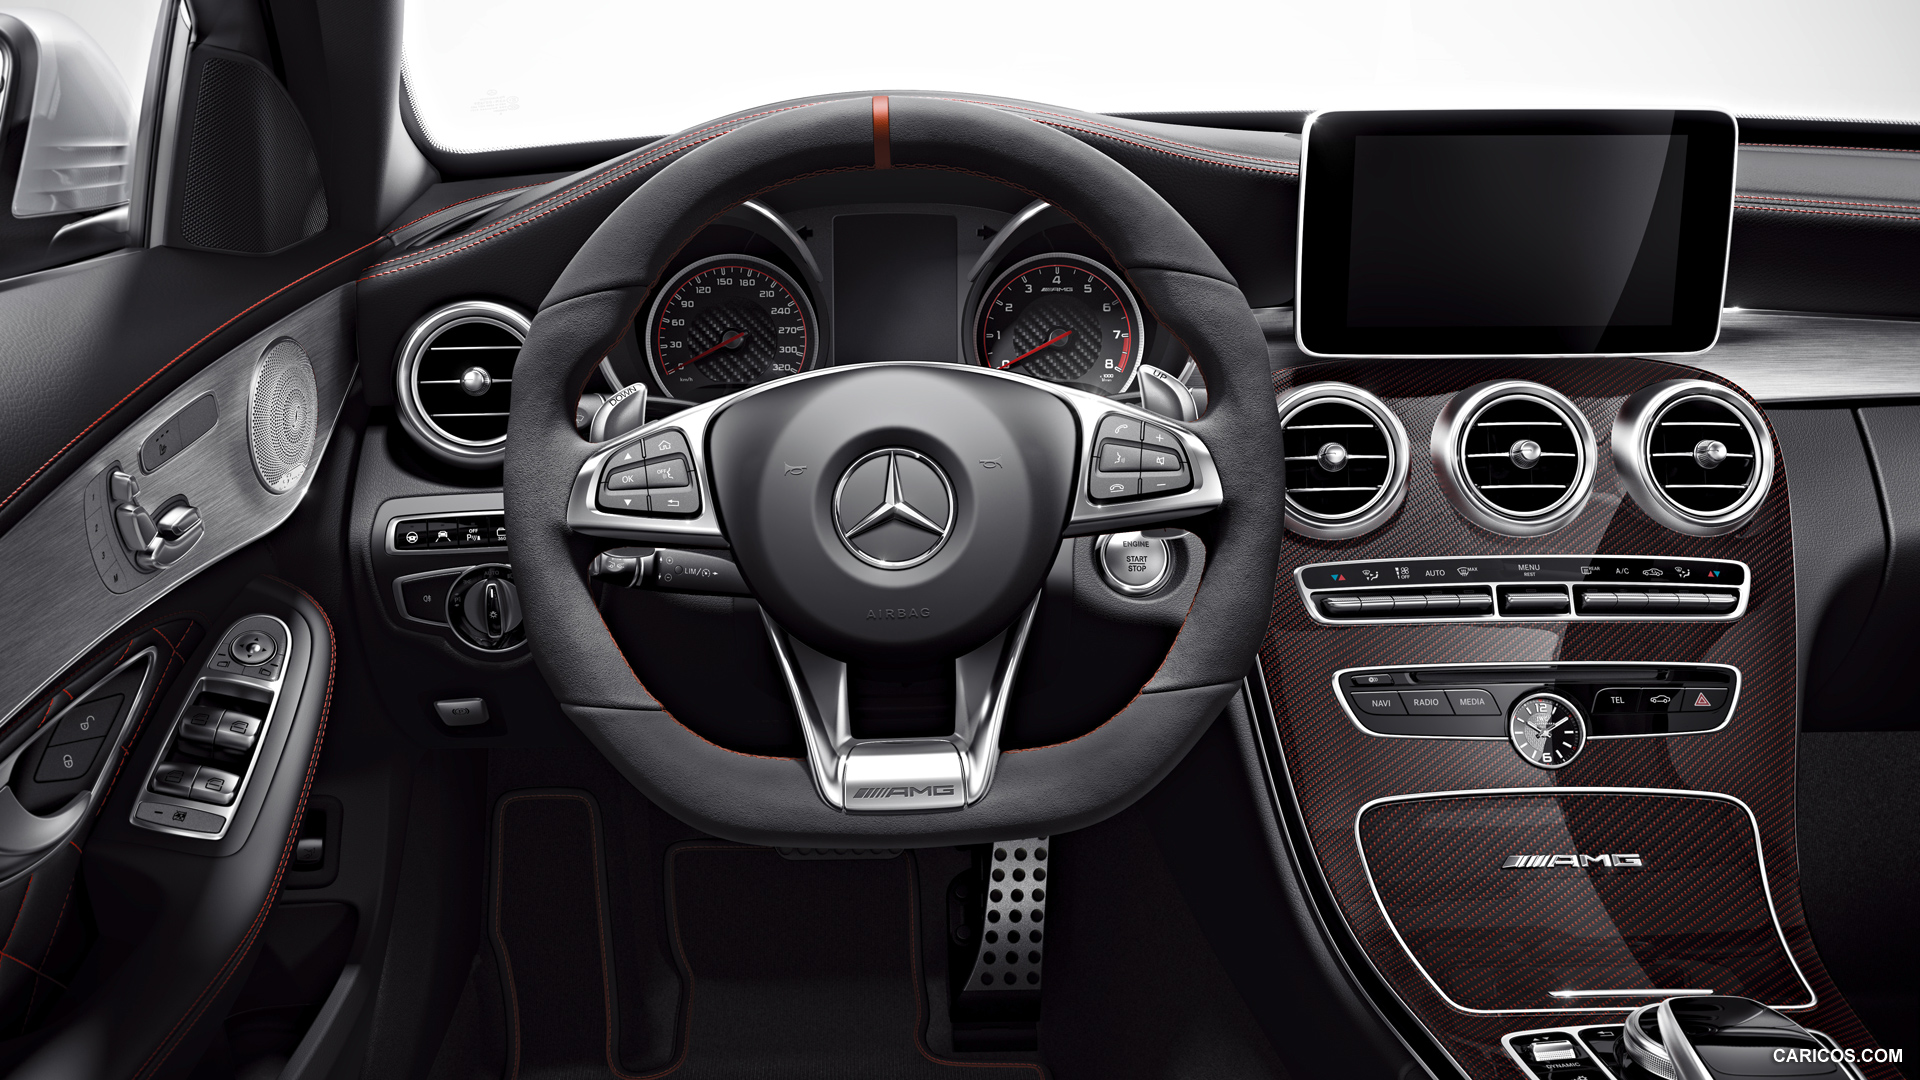 Mercedes Benz 2015 Models